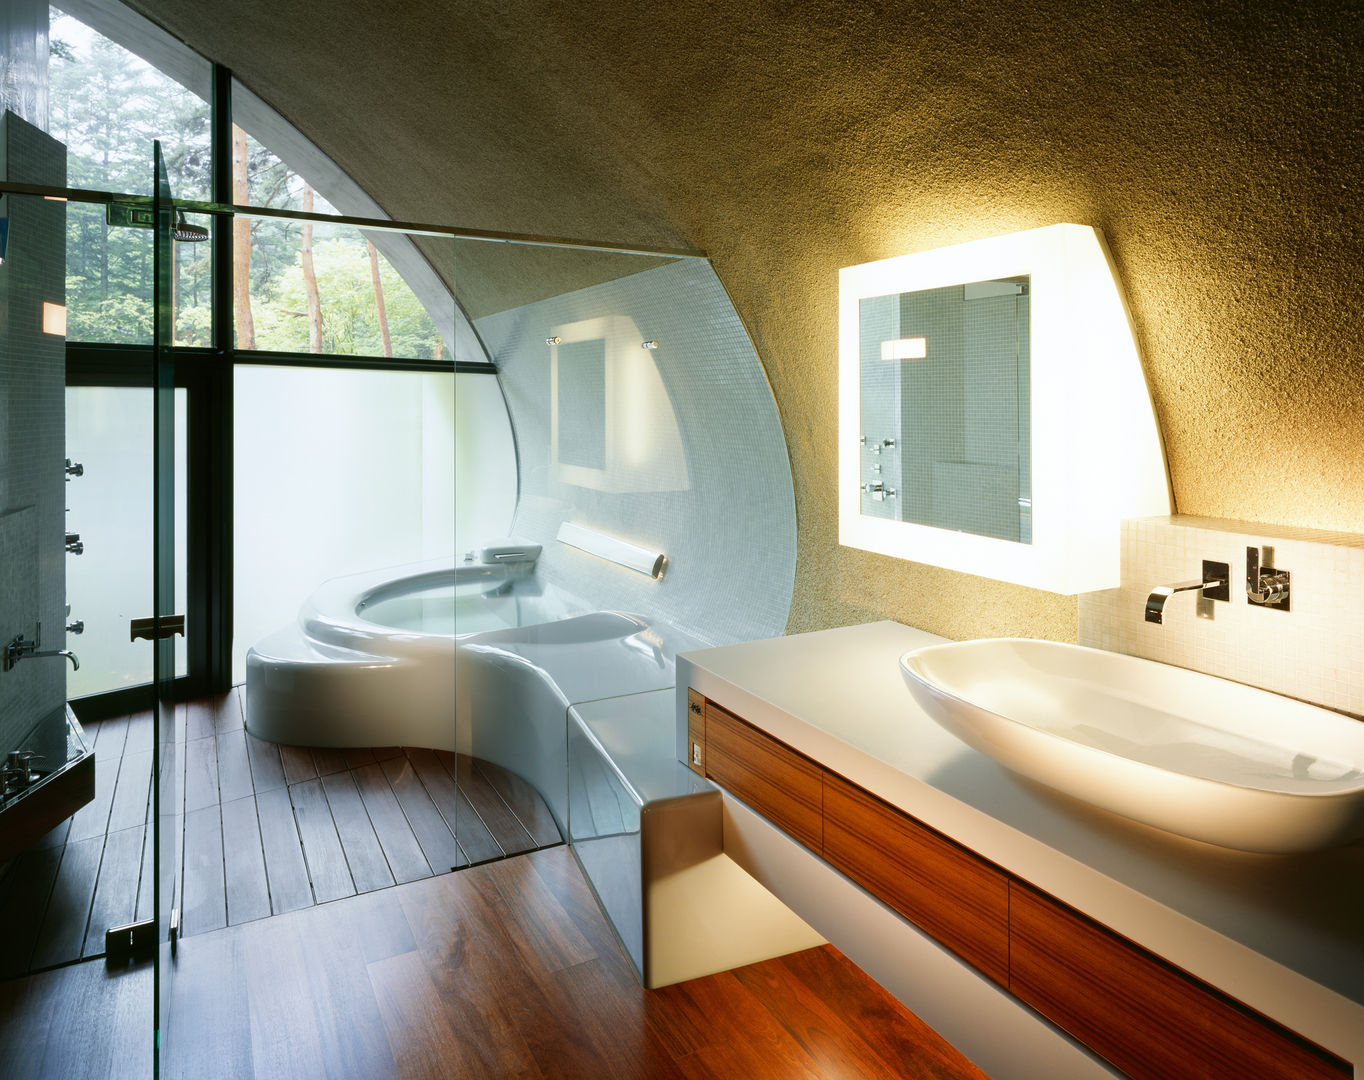 SHELL, ARTechnic architects / アールテクニック ARTechnic architects / アールテクニック Ванная комната в стиле модерн